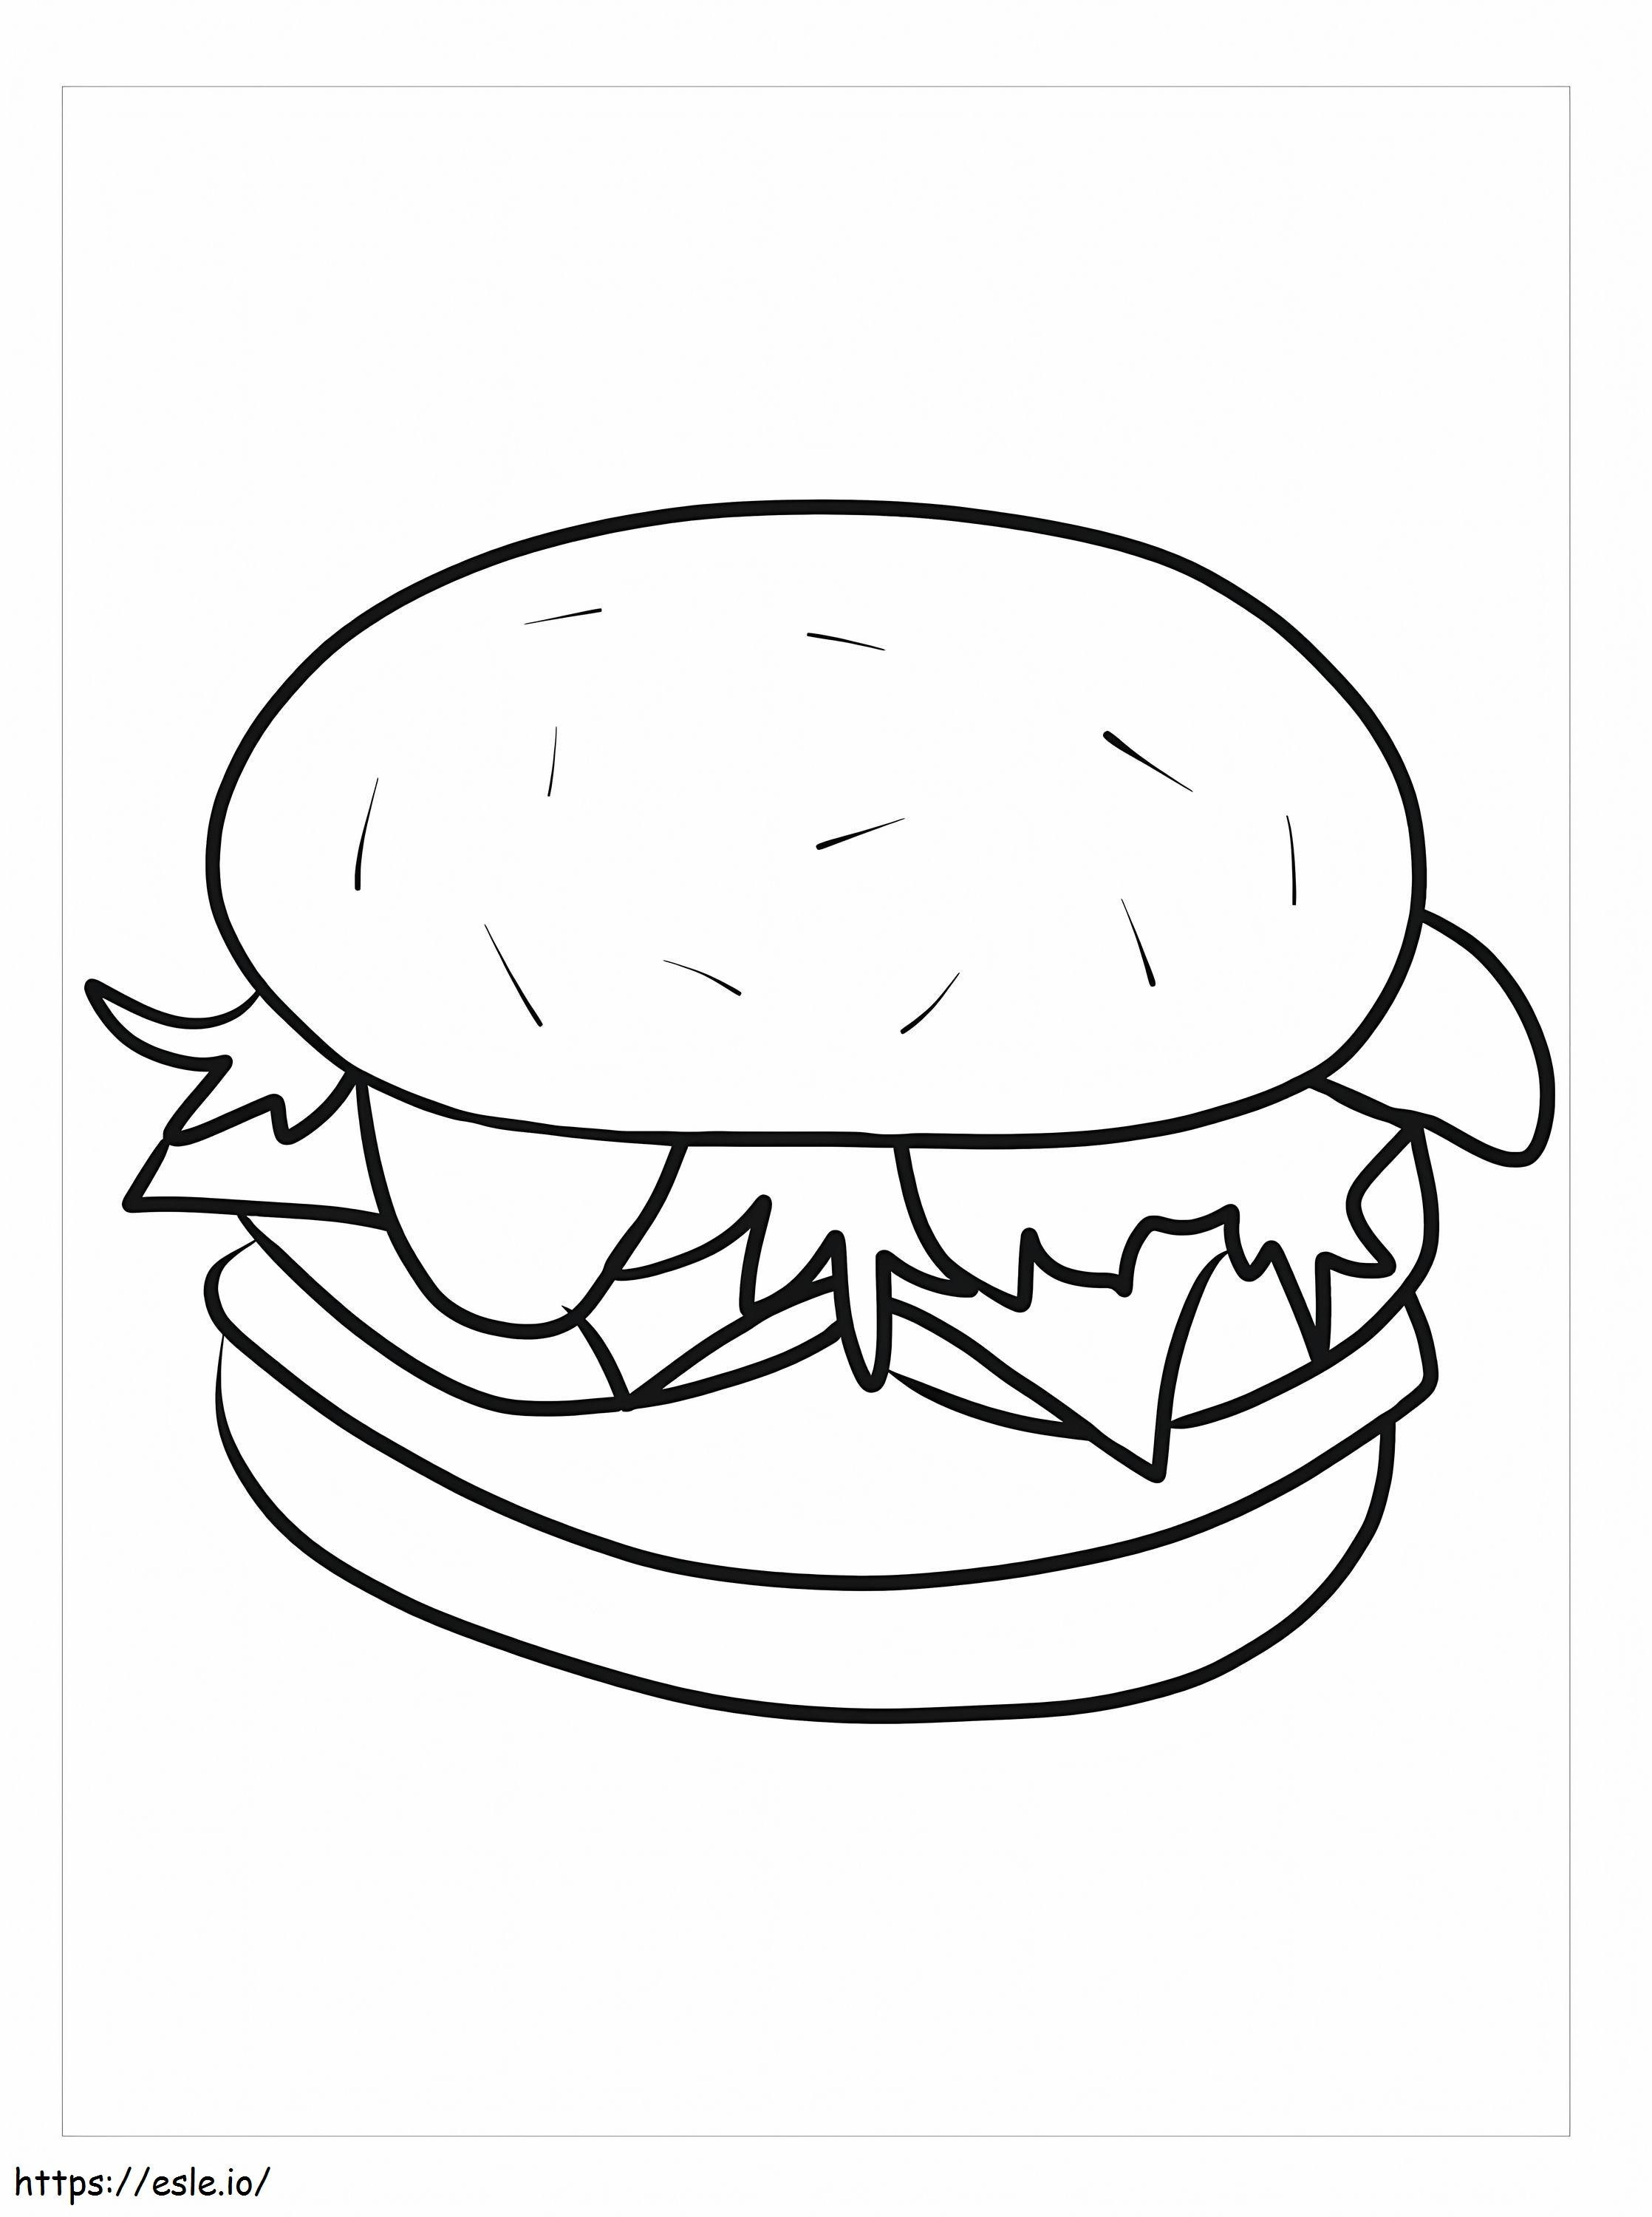 Geweldige hamburger kleurplaat kleurplaat